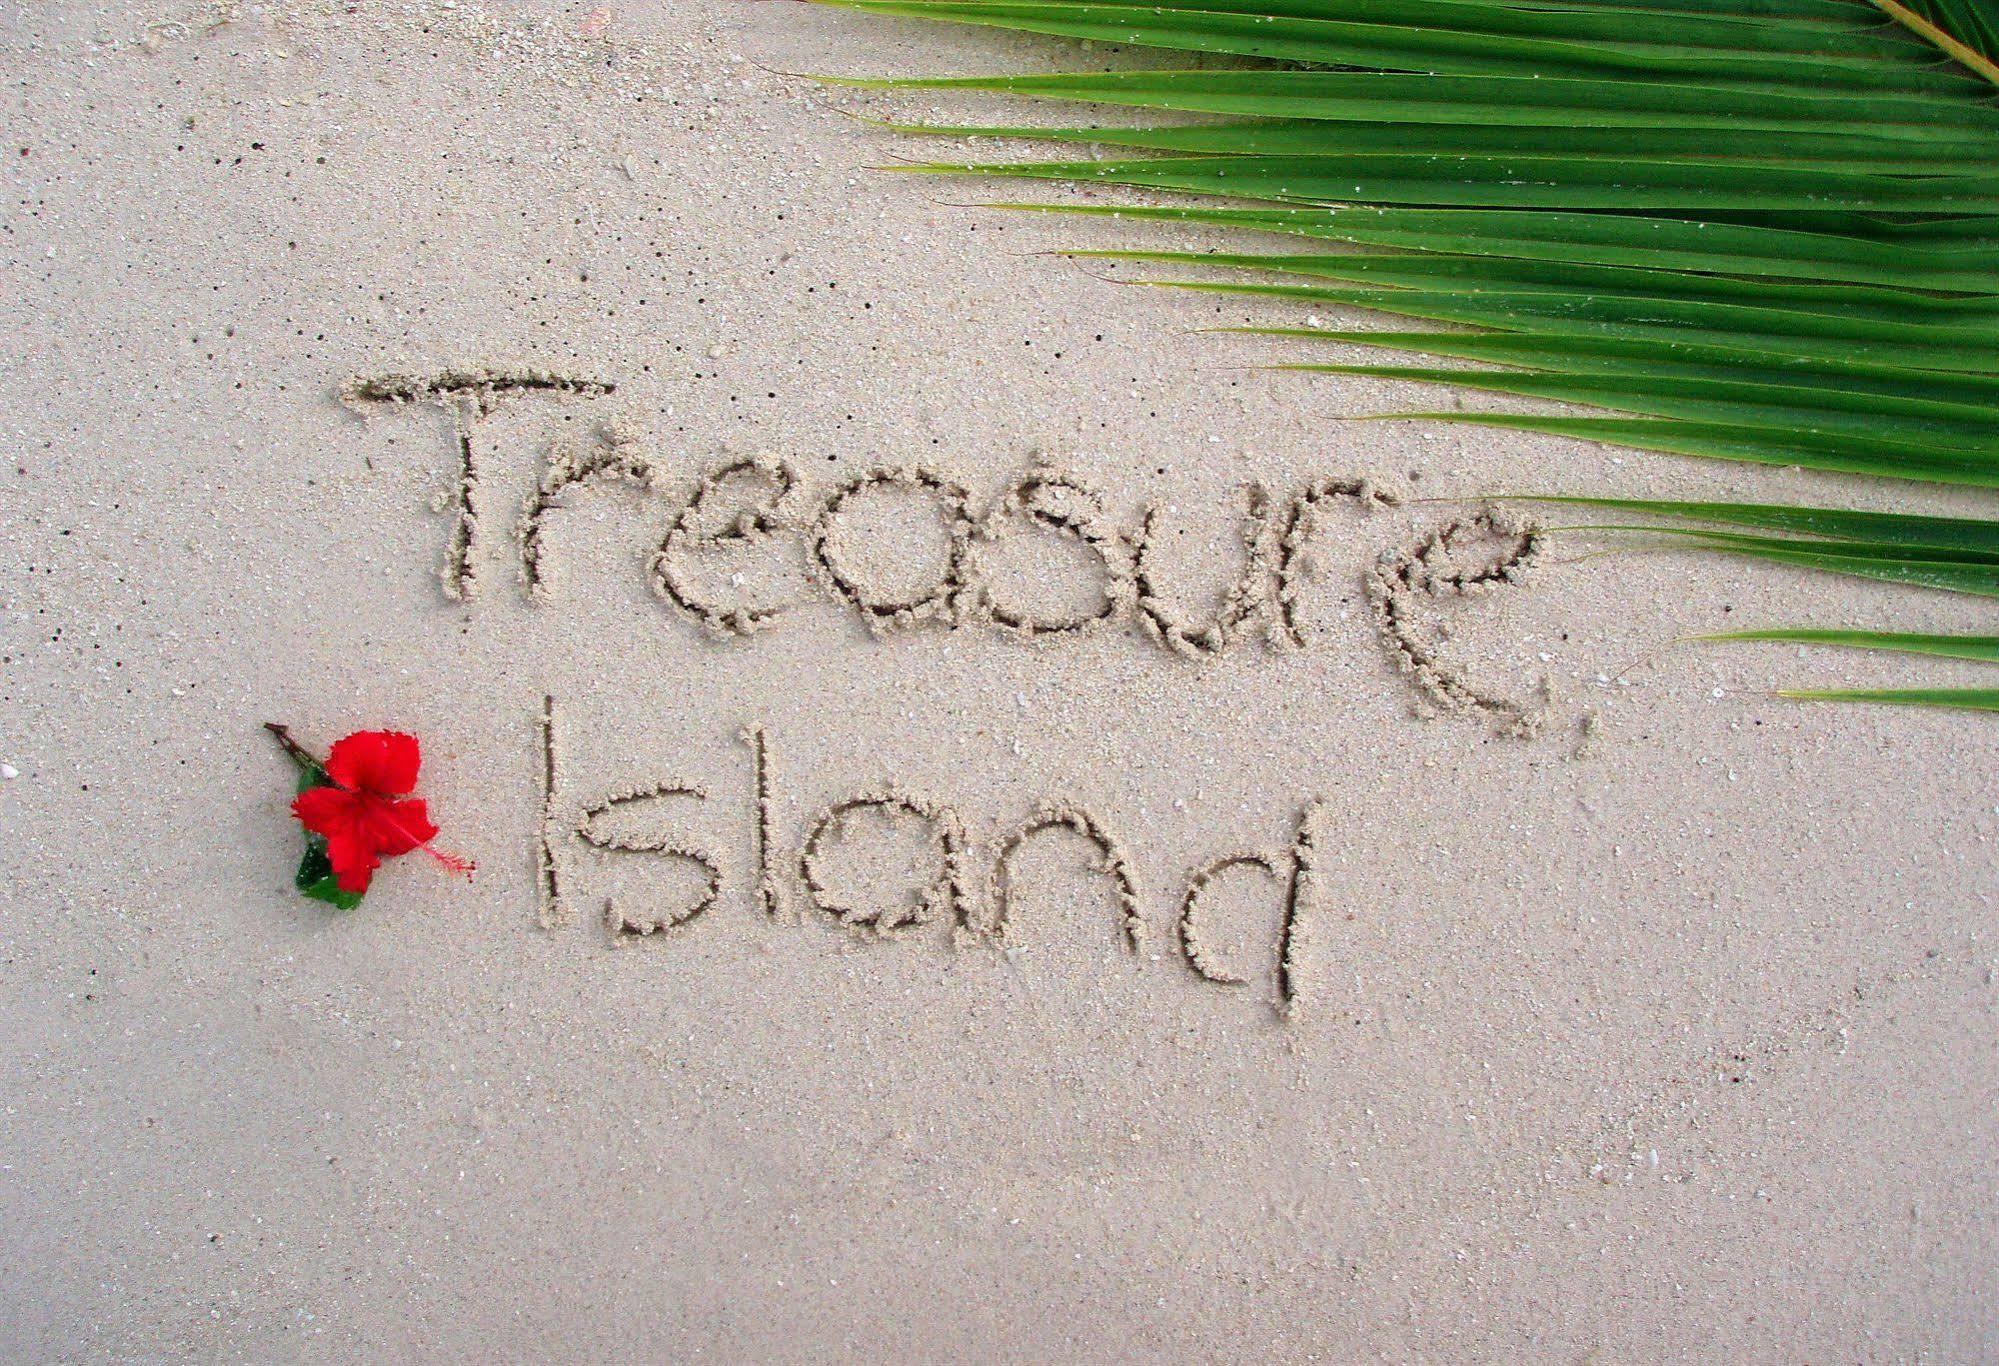 Treasure Island Fiji Hotel Exterior photo